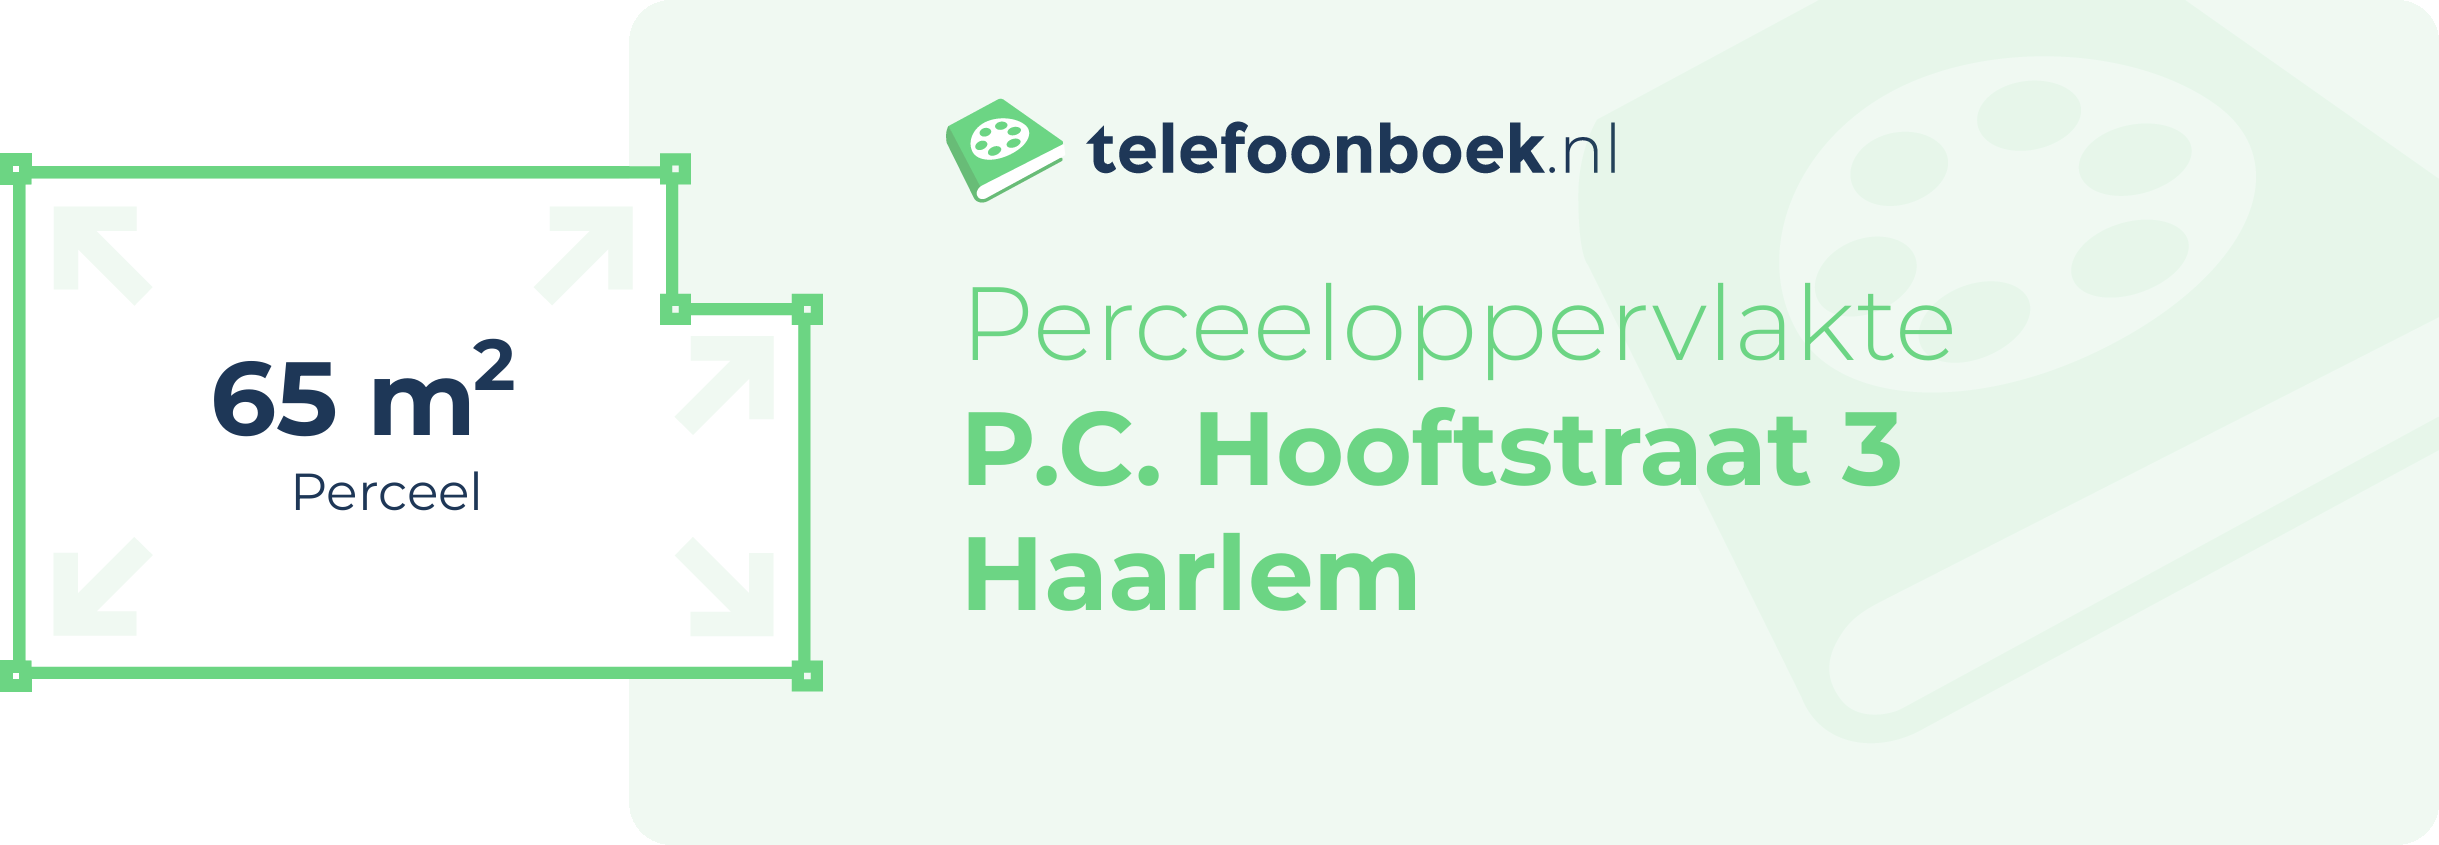 Perceeloppervlakte P.C. Hooftstraat 3 Haarlem